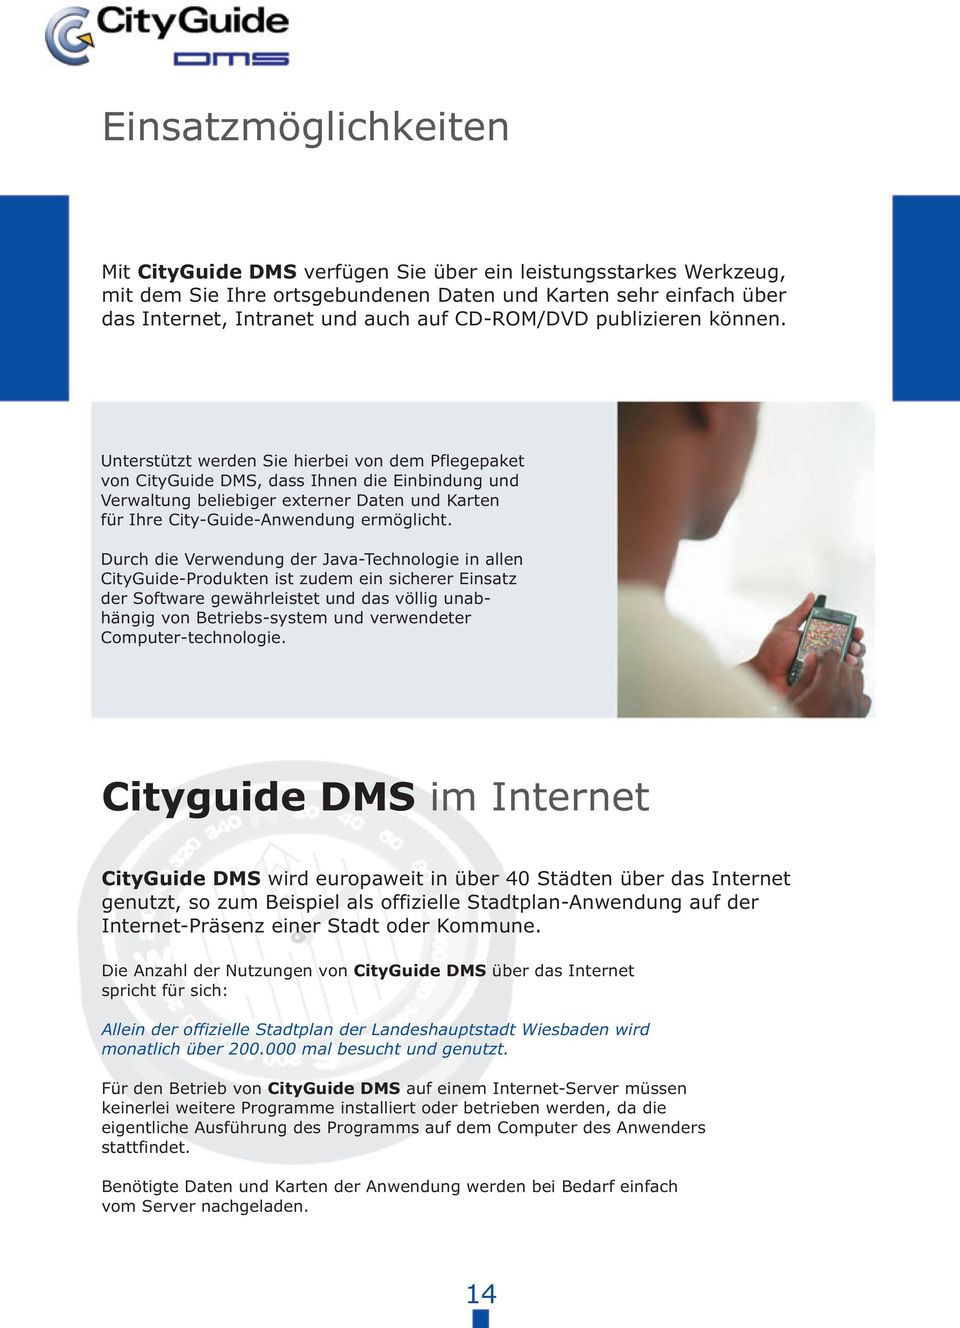 Unterstützt werden Sie hierbei von dem Pfegepaket von CityGuide DMS, dass Ihnen die Einbindung und Verwatung beiebiger externer Daten und Karten für Ihre City-Guide-Anwendung ermögicht.